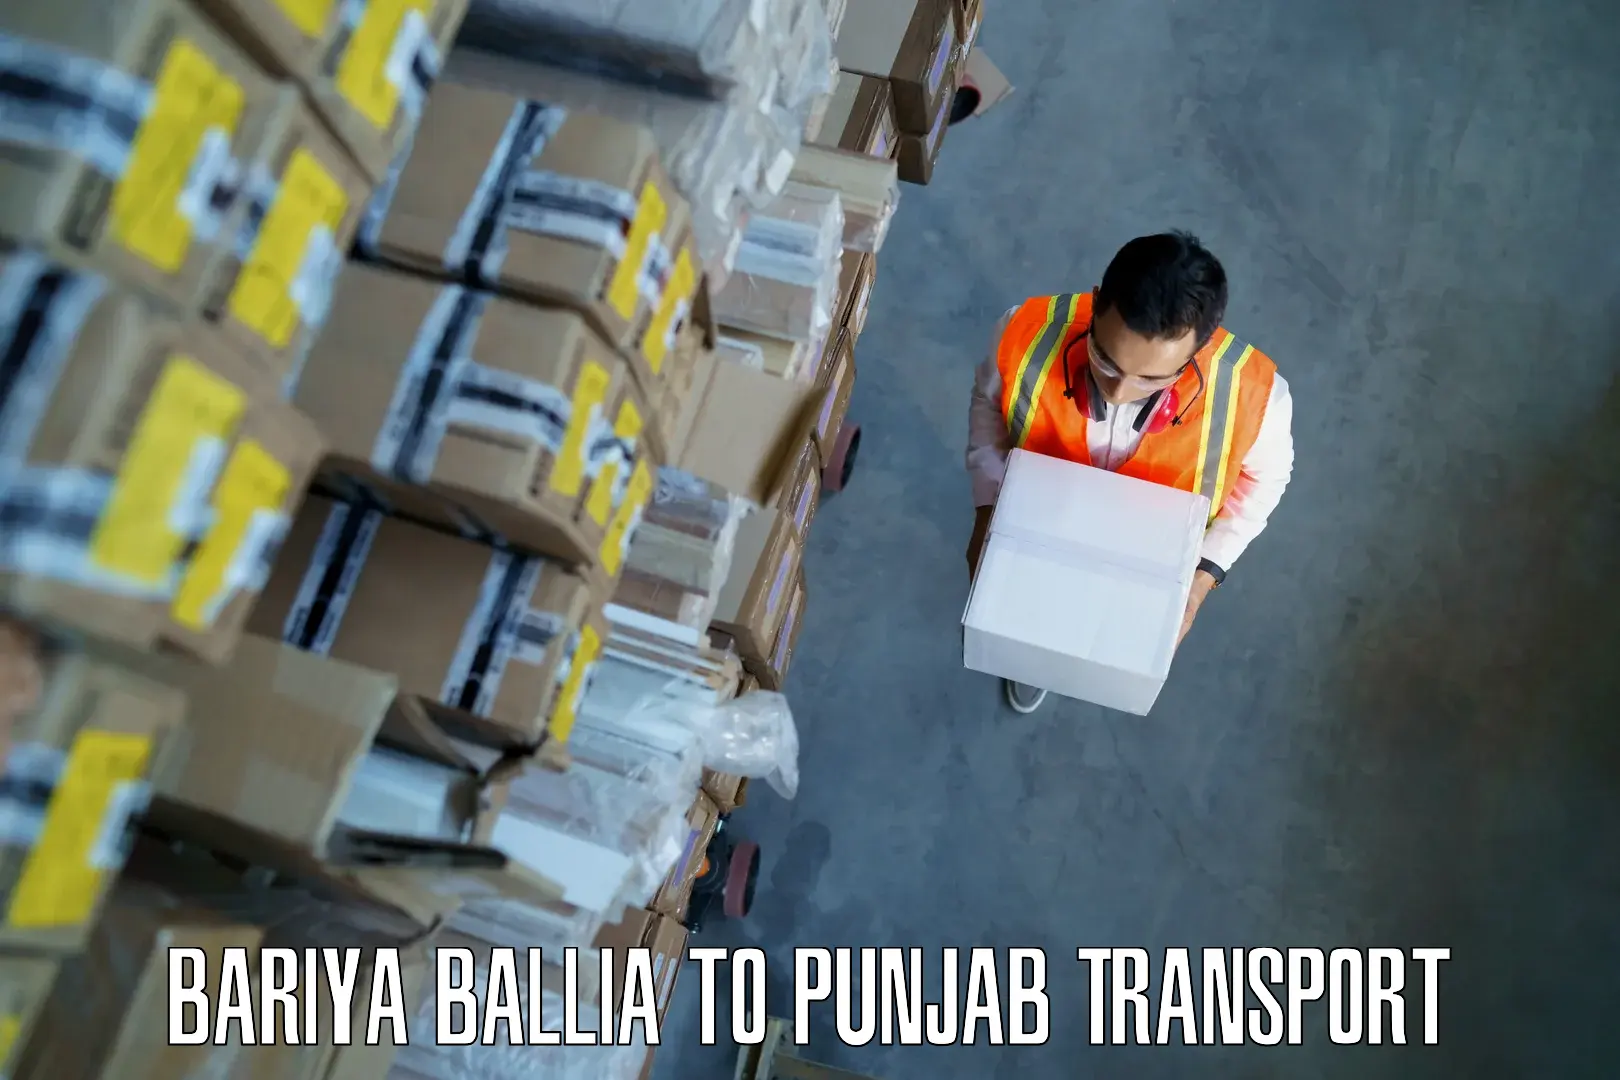 Furniture transport service Bariya Ballia to Bagha Purana